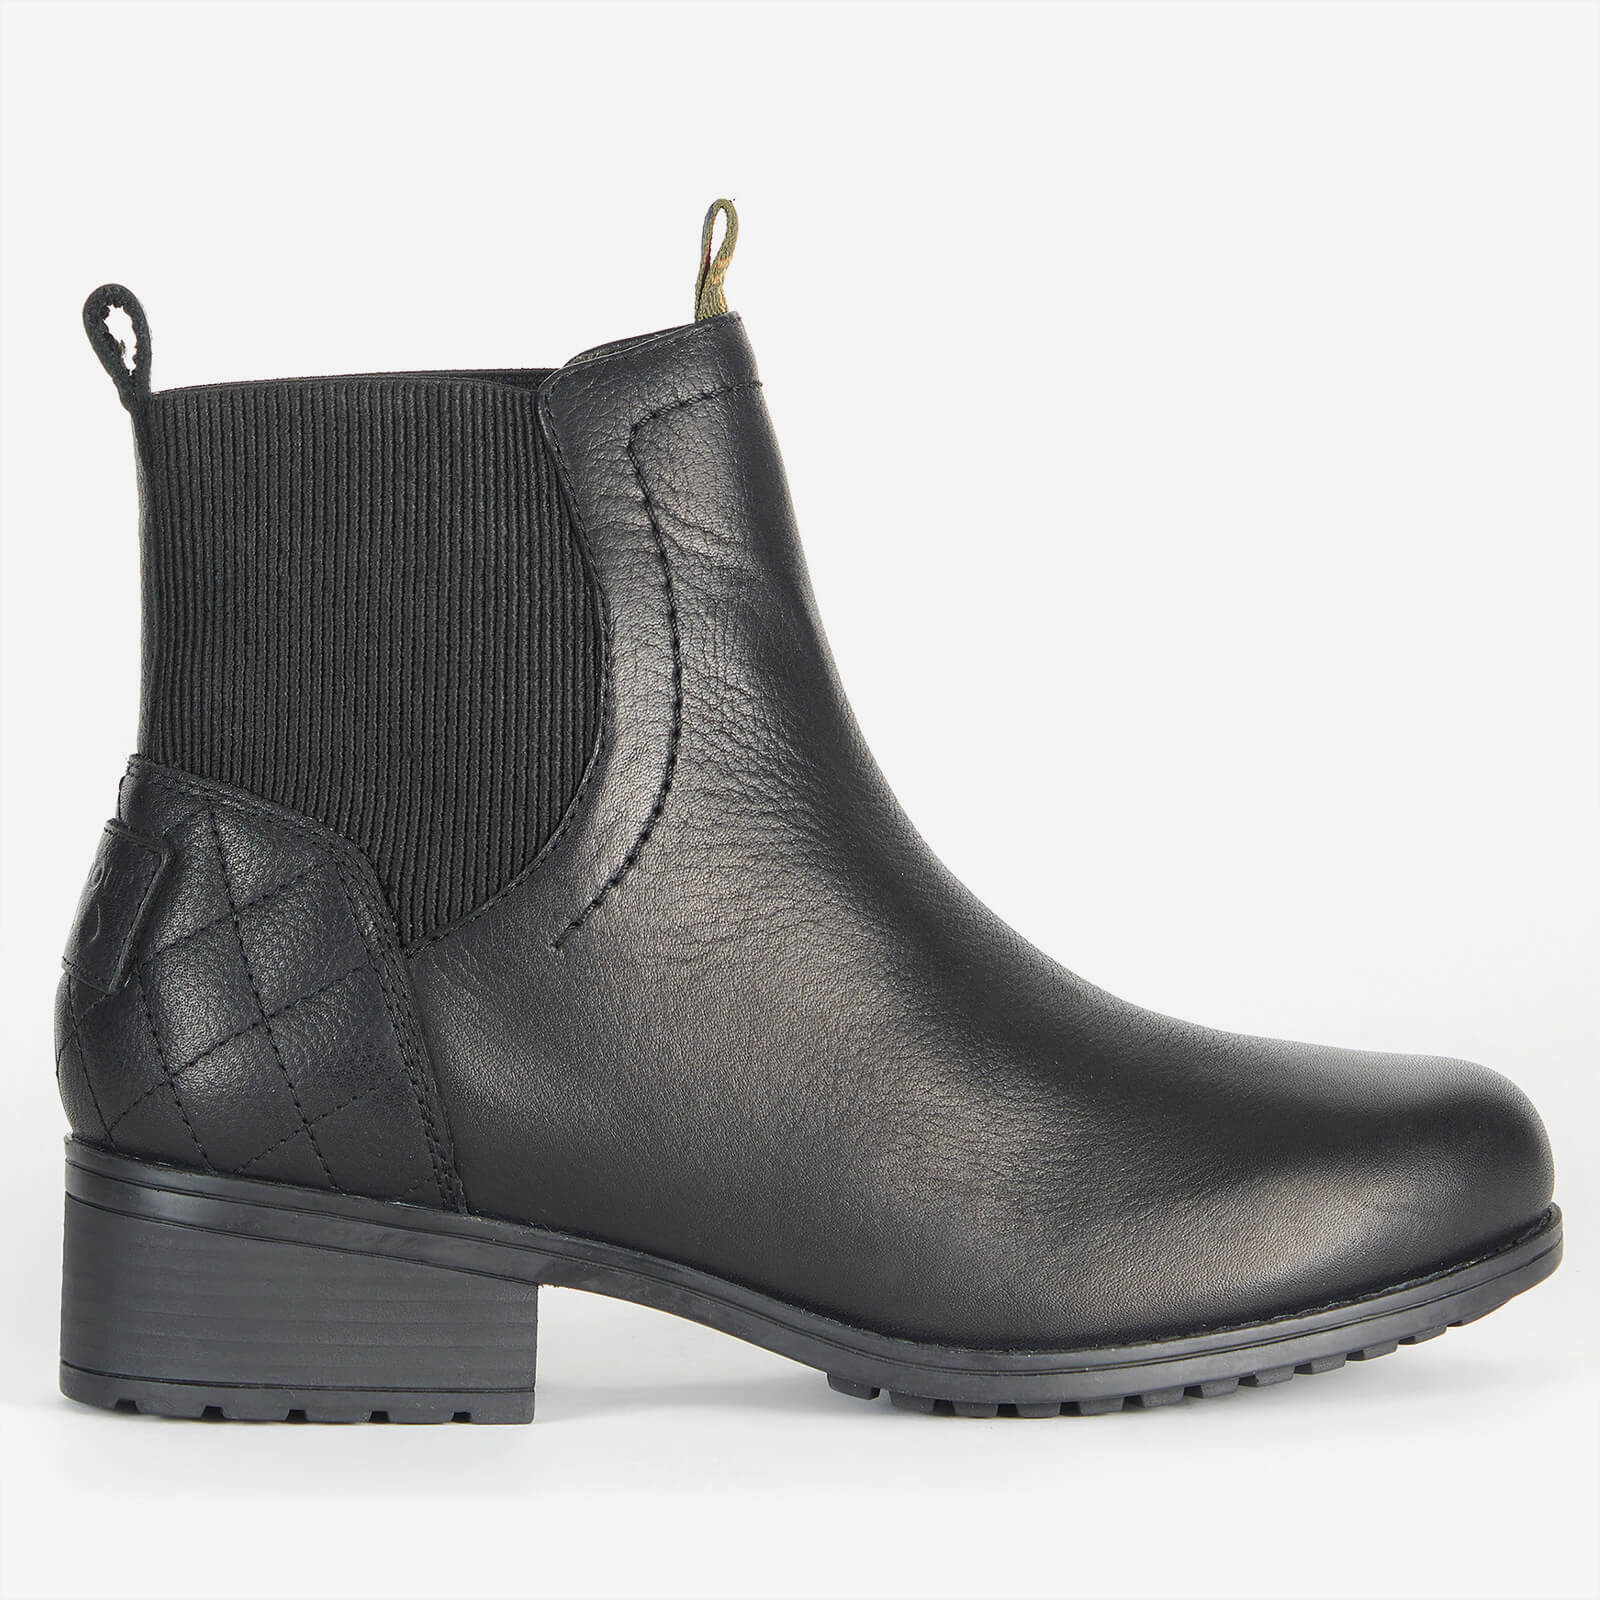 Barbour Women's Eden Waterproof Leather Chelsea Boots - Black - UK 3